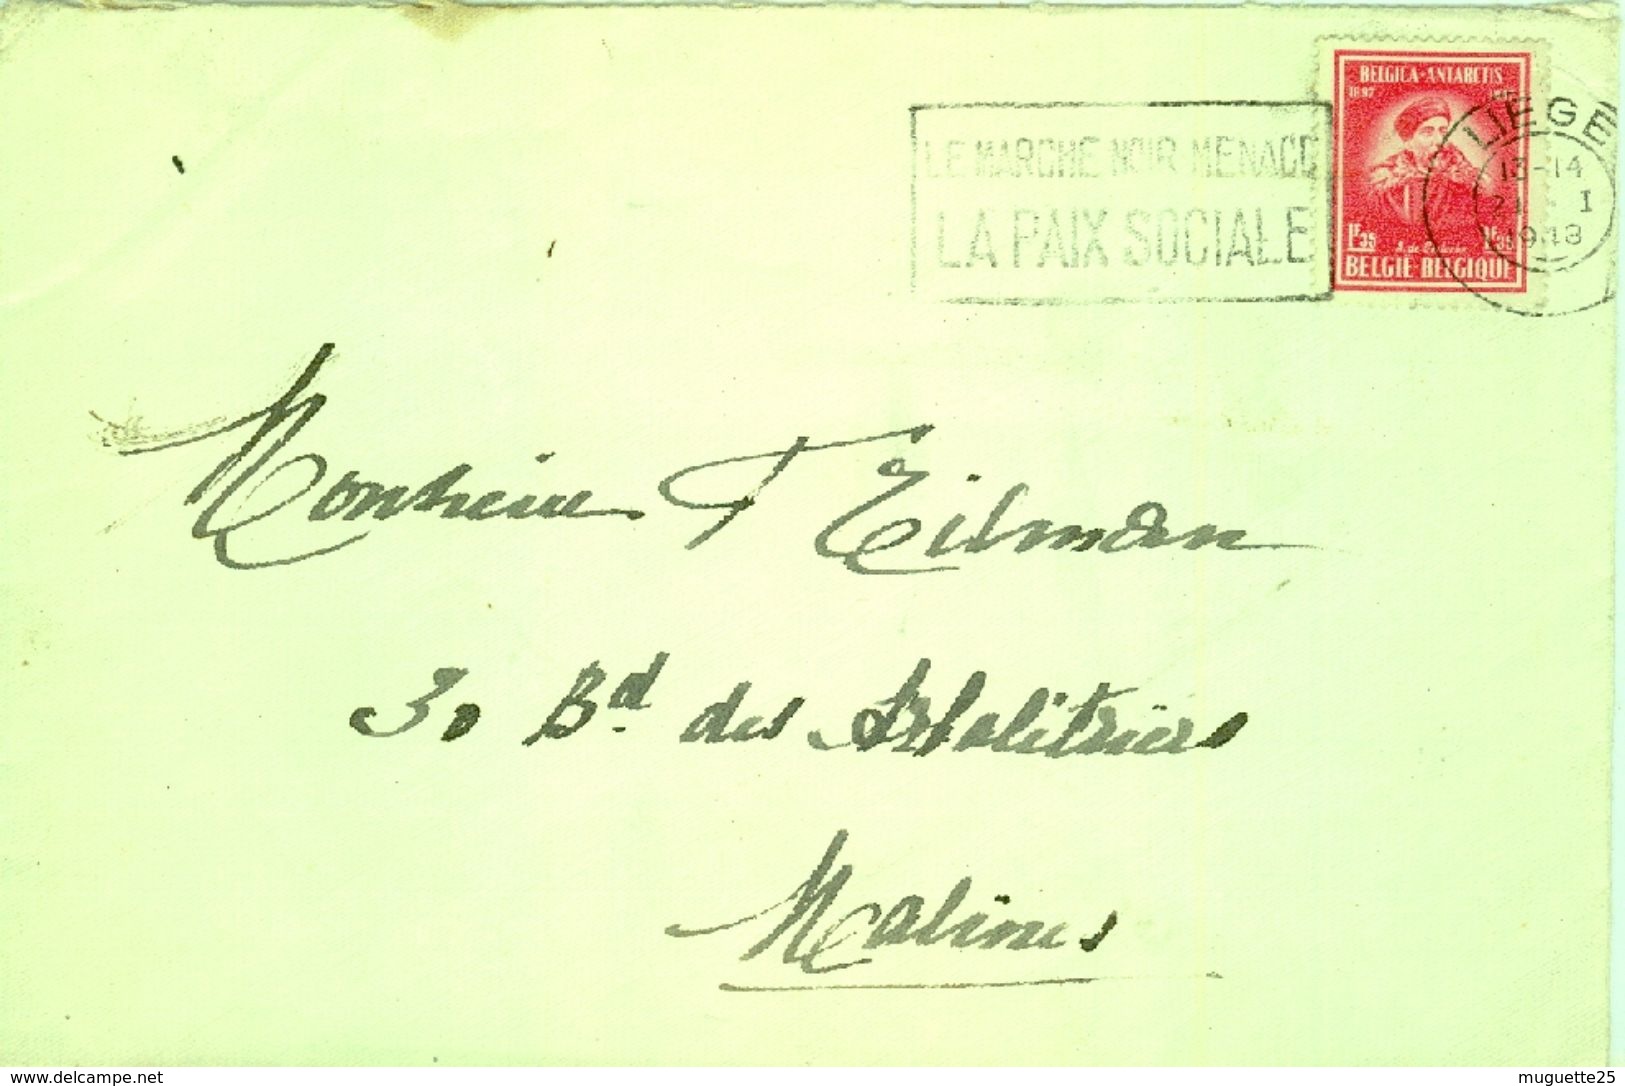 Enveloppe  21 Janvier 1948  Marque Postale  LE MARCHE NOIR MENACE LA PAIX SOCIALE - Flammes